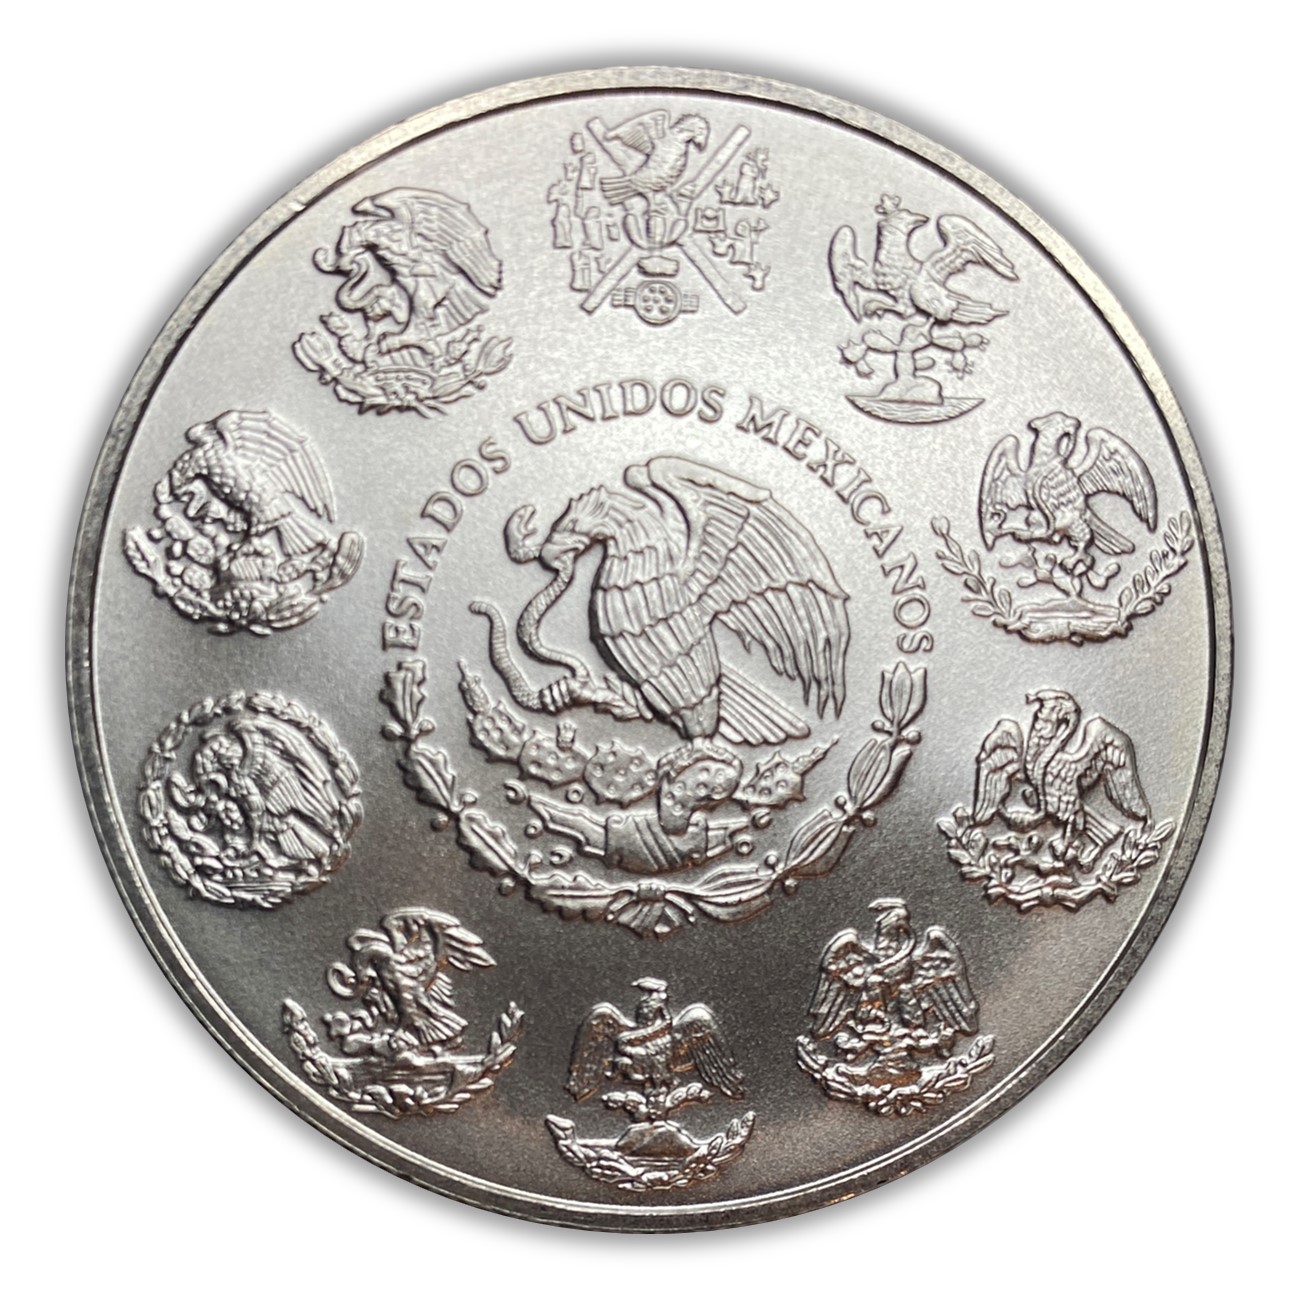 2010-19 Mexico Libertad 1 oz Silver Coin